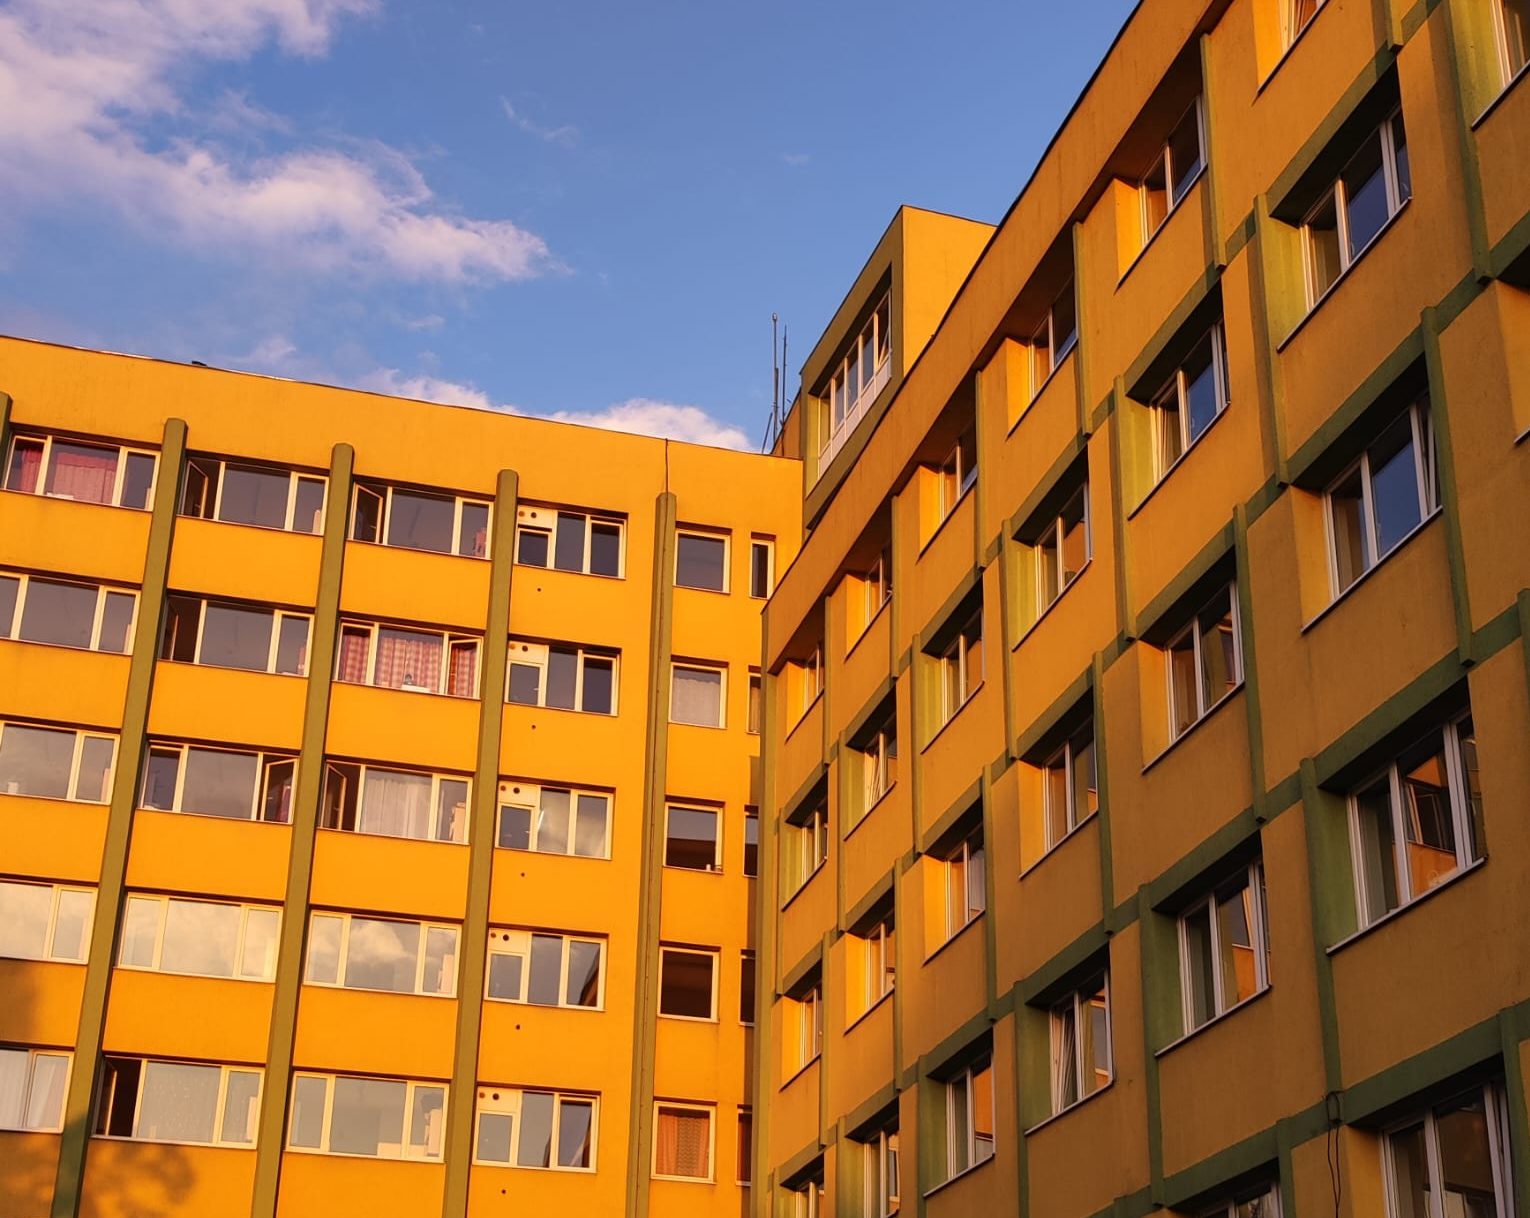 Clădire galben cu detalii verzi